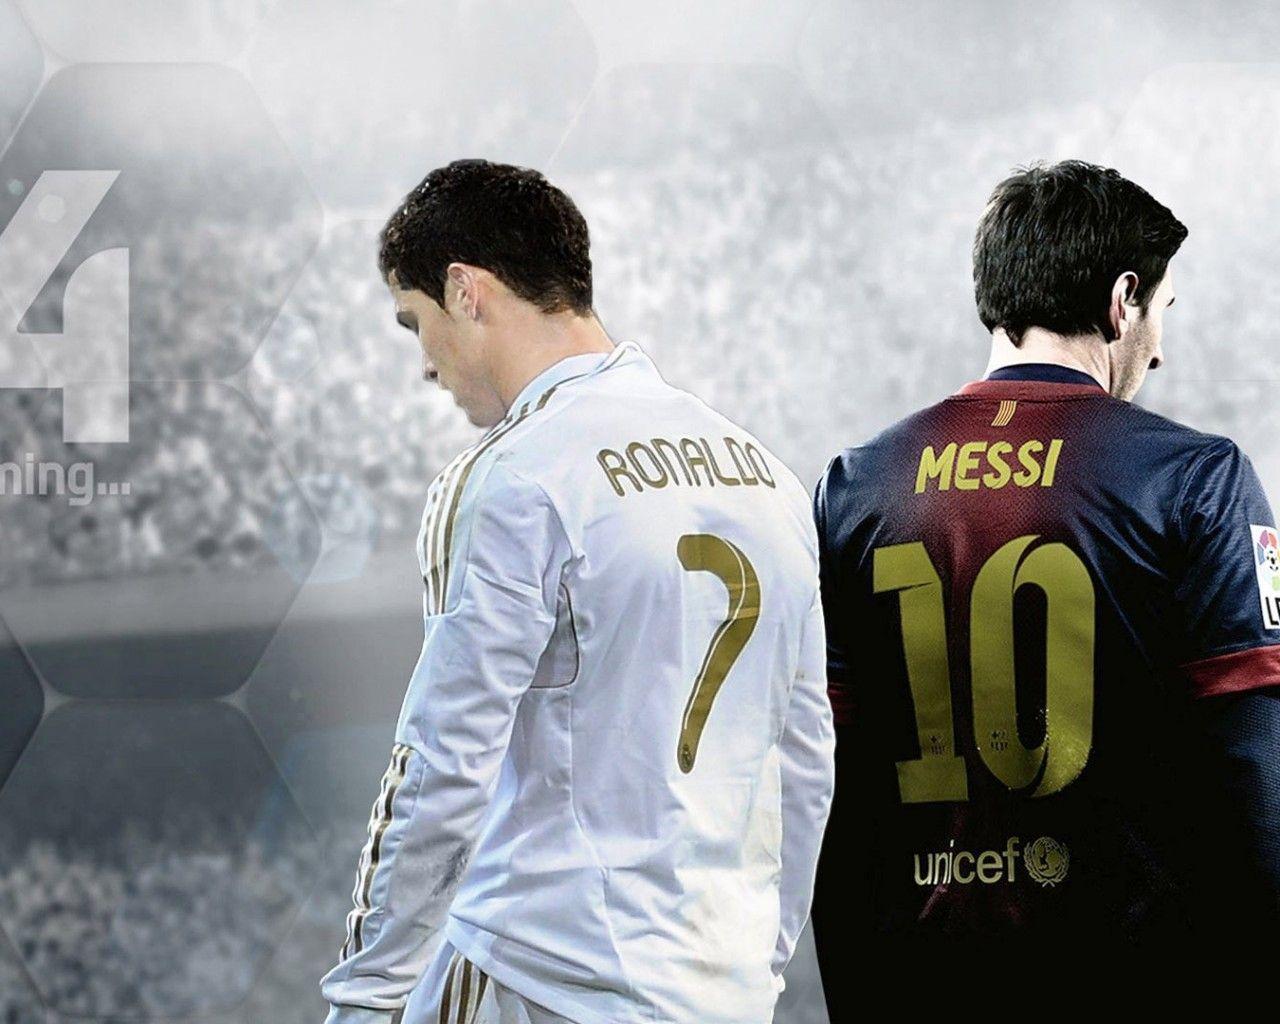 FIFA 14 Ronaldo vs Messi wallpaper Wide or HD